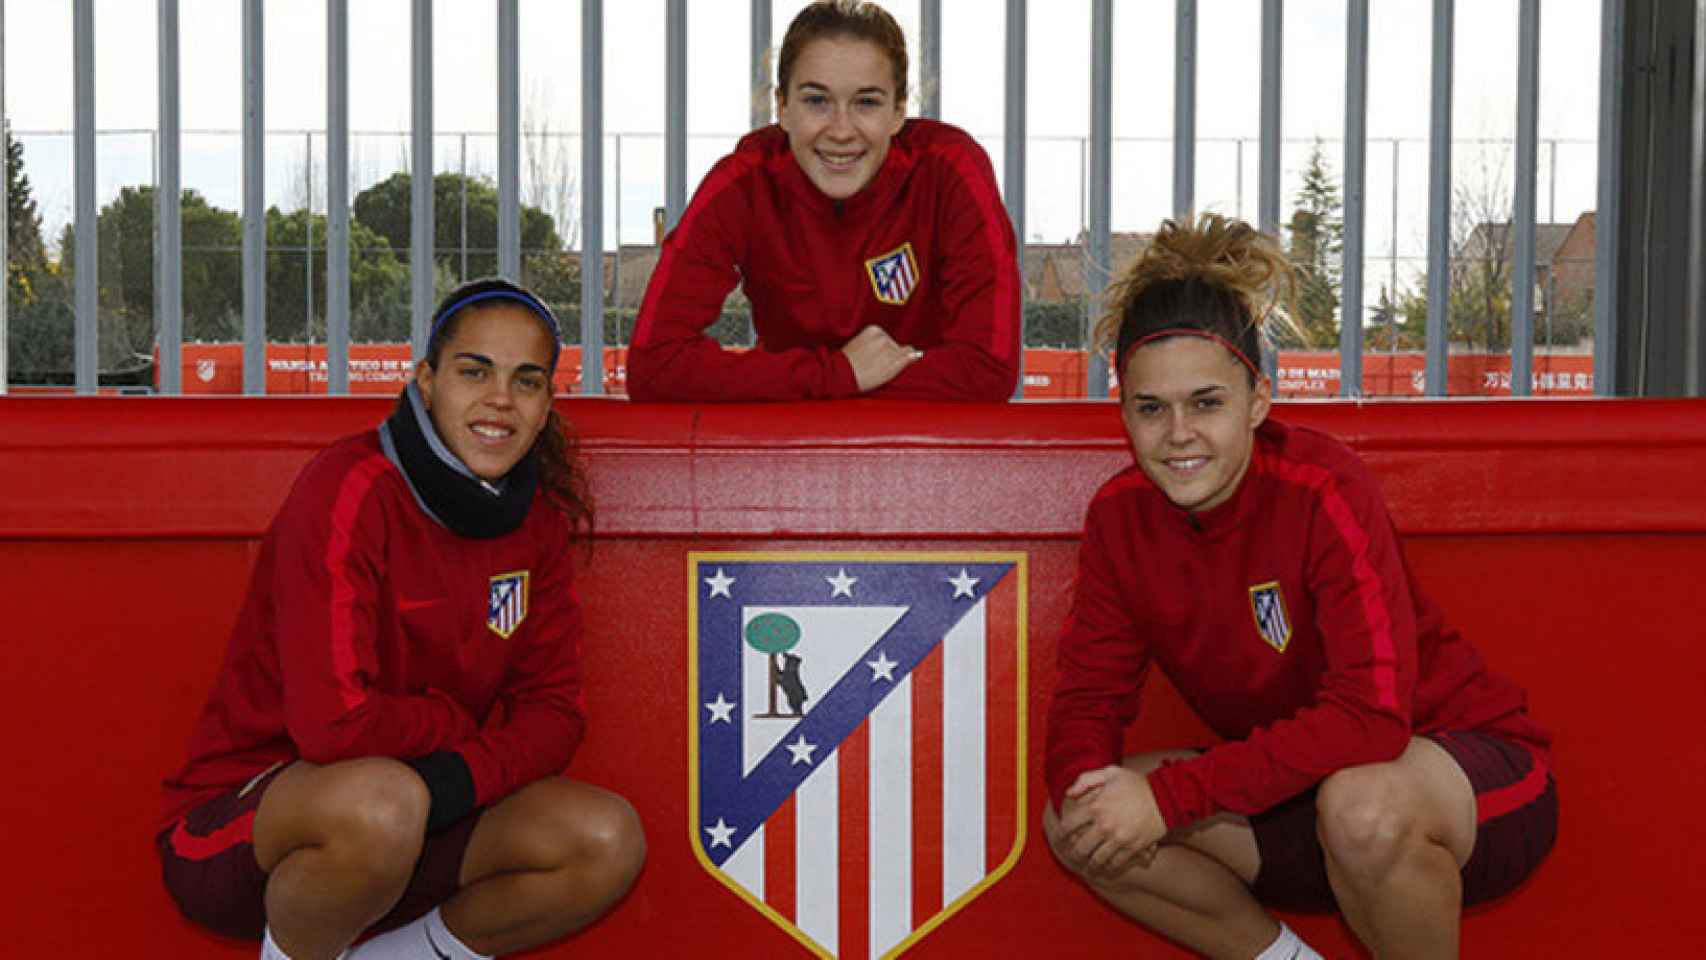 Andrea Falcón, Bea Beltrán y Mapi, jugadoras del Atlético. Foto: atleticodemadrid.com